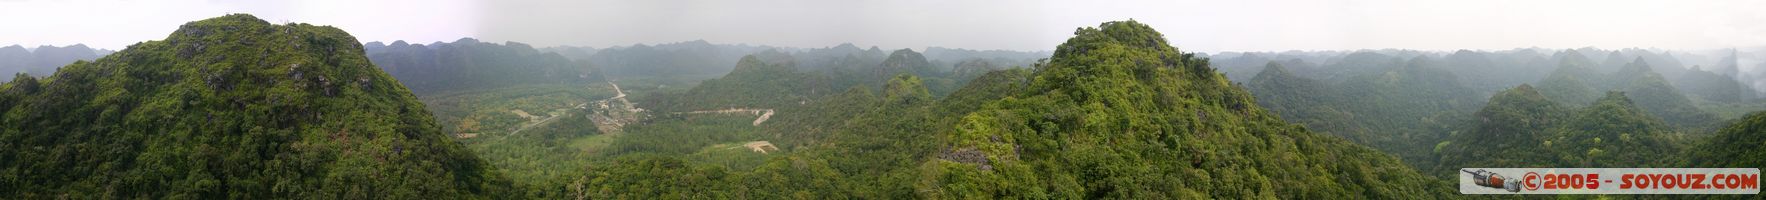 Halong Bay - Cat Ba Island - panorama
Mots-clés: Vietnam patrimoine unesco panorama